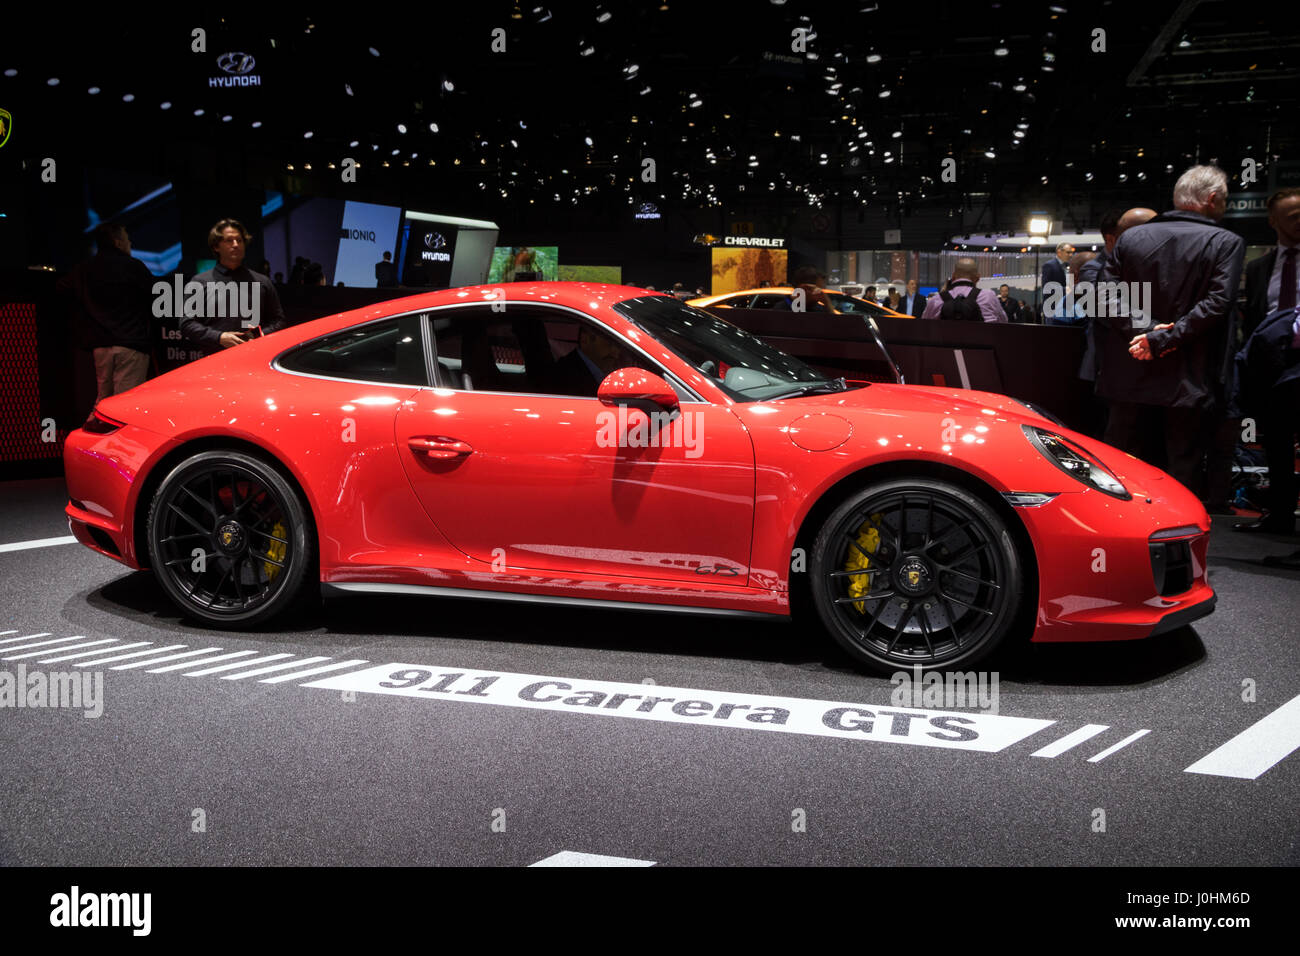 Porsche 911 Targa Stockfotos und -bilder Kaufen - Alamy